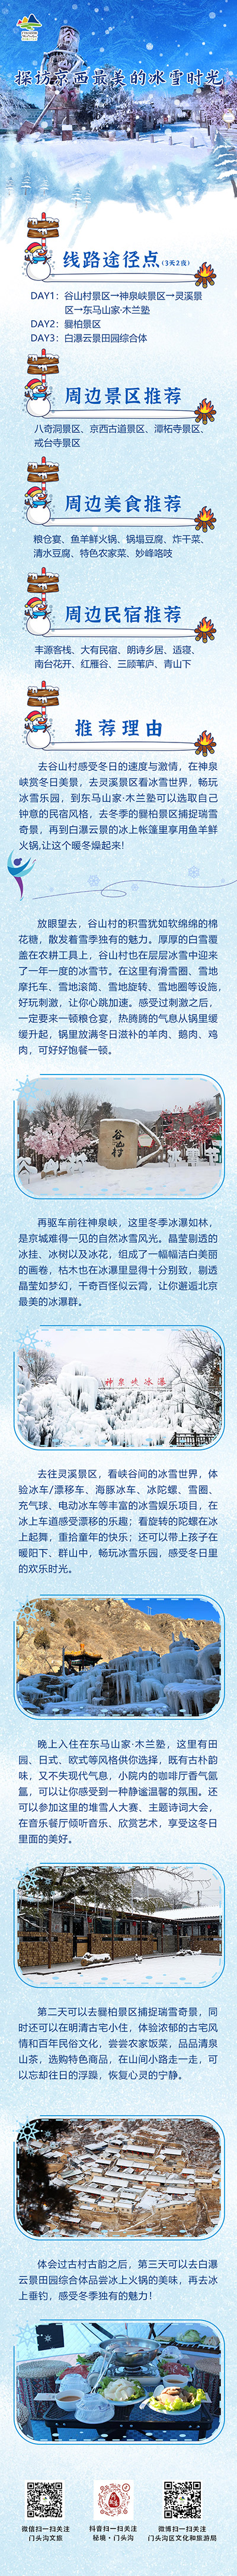 门头沟推出“紫气东来冰雪京西” 新年冬季冰雪精品旅游线路